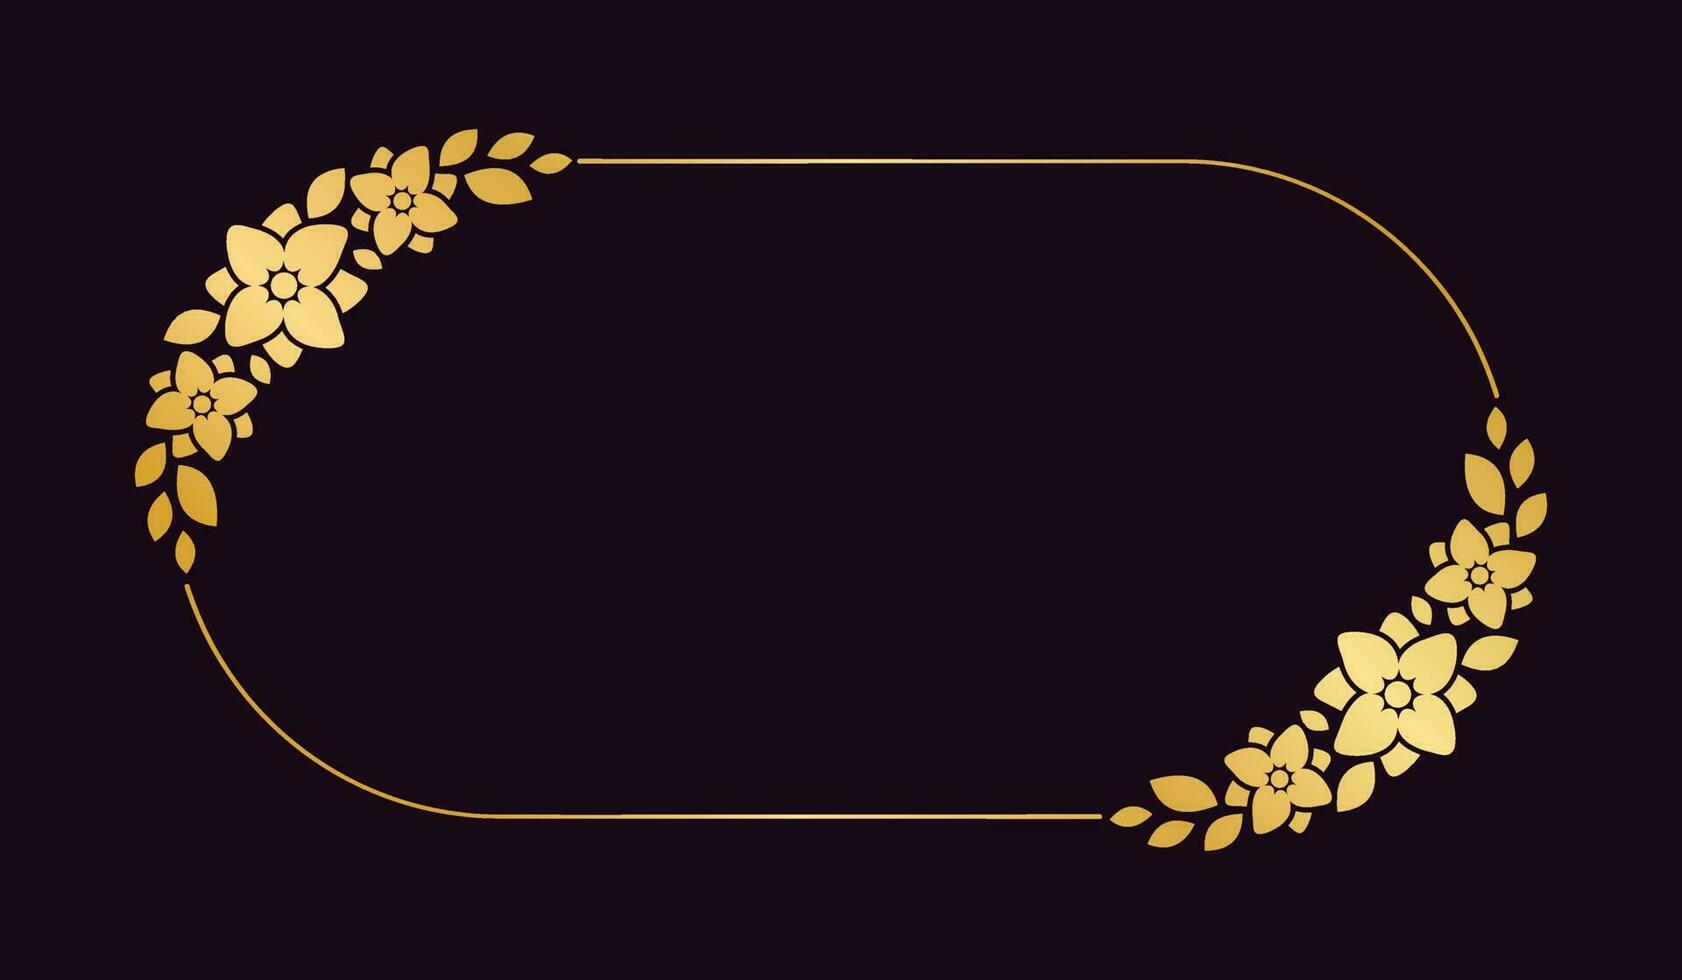 oro oval floral marco modelo. lujo dorado marco frontera para invitar, boda, certificado. vector Arte con flores y hojas.